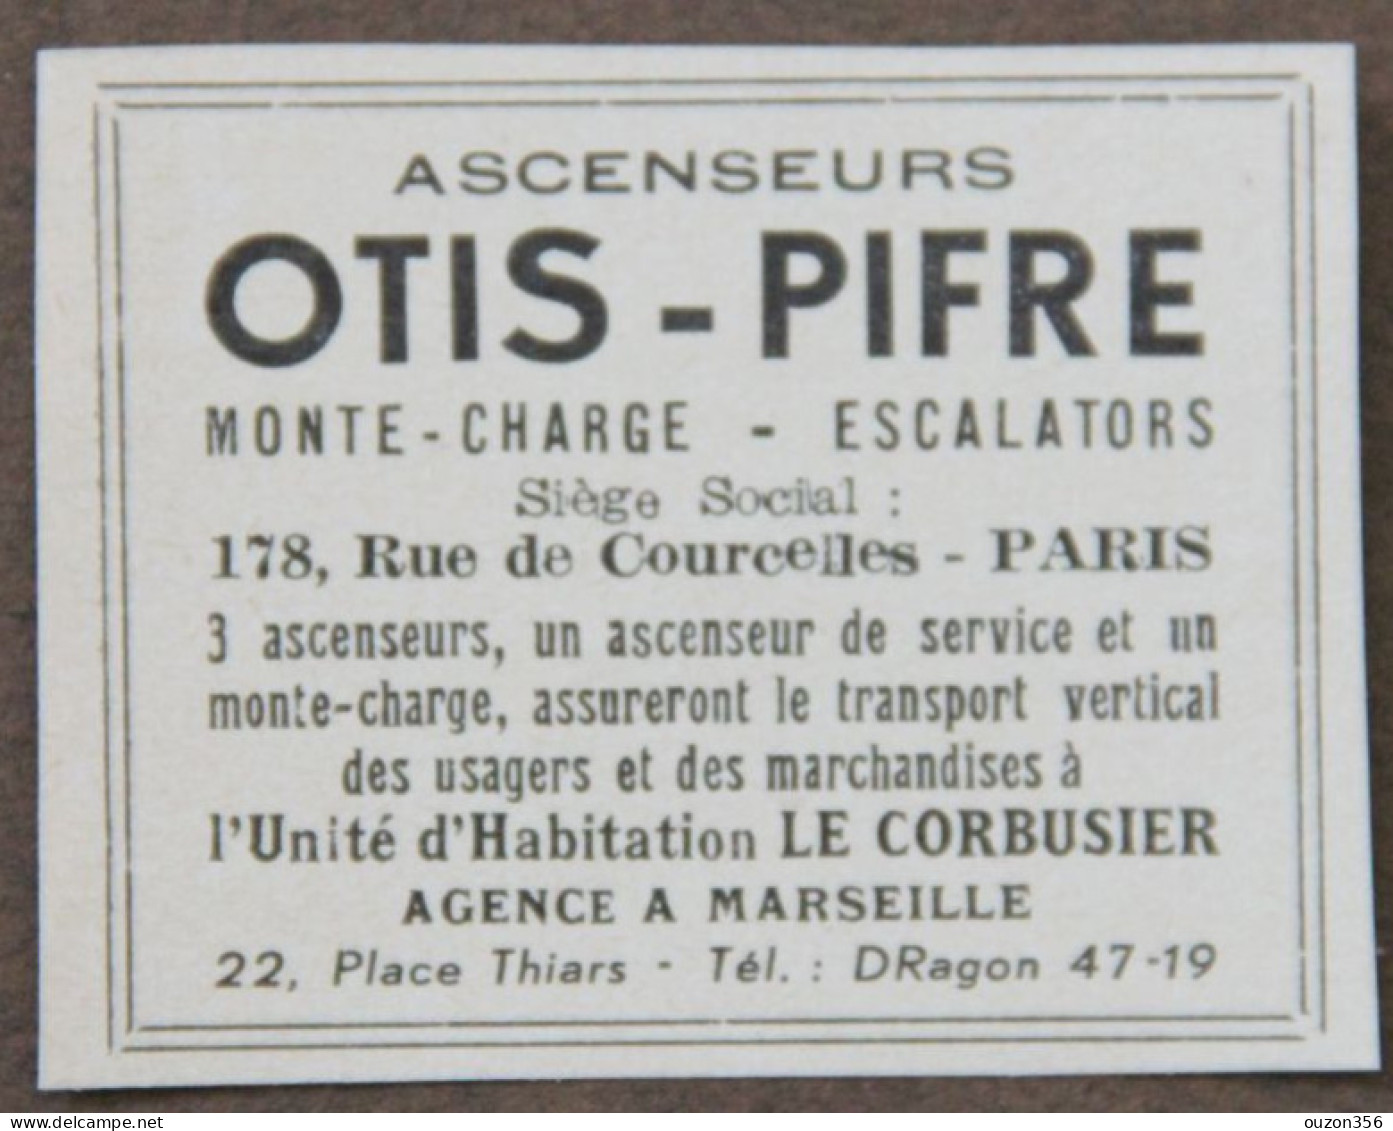 Publicité : Ascenseurs OTIS-PIFRE, Monte-charge, Escalators, Paris, Agence à Marseille, Le Corbusier, 1951 - Advertising